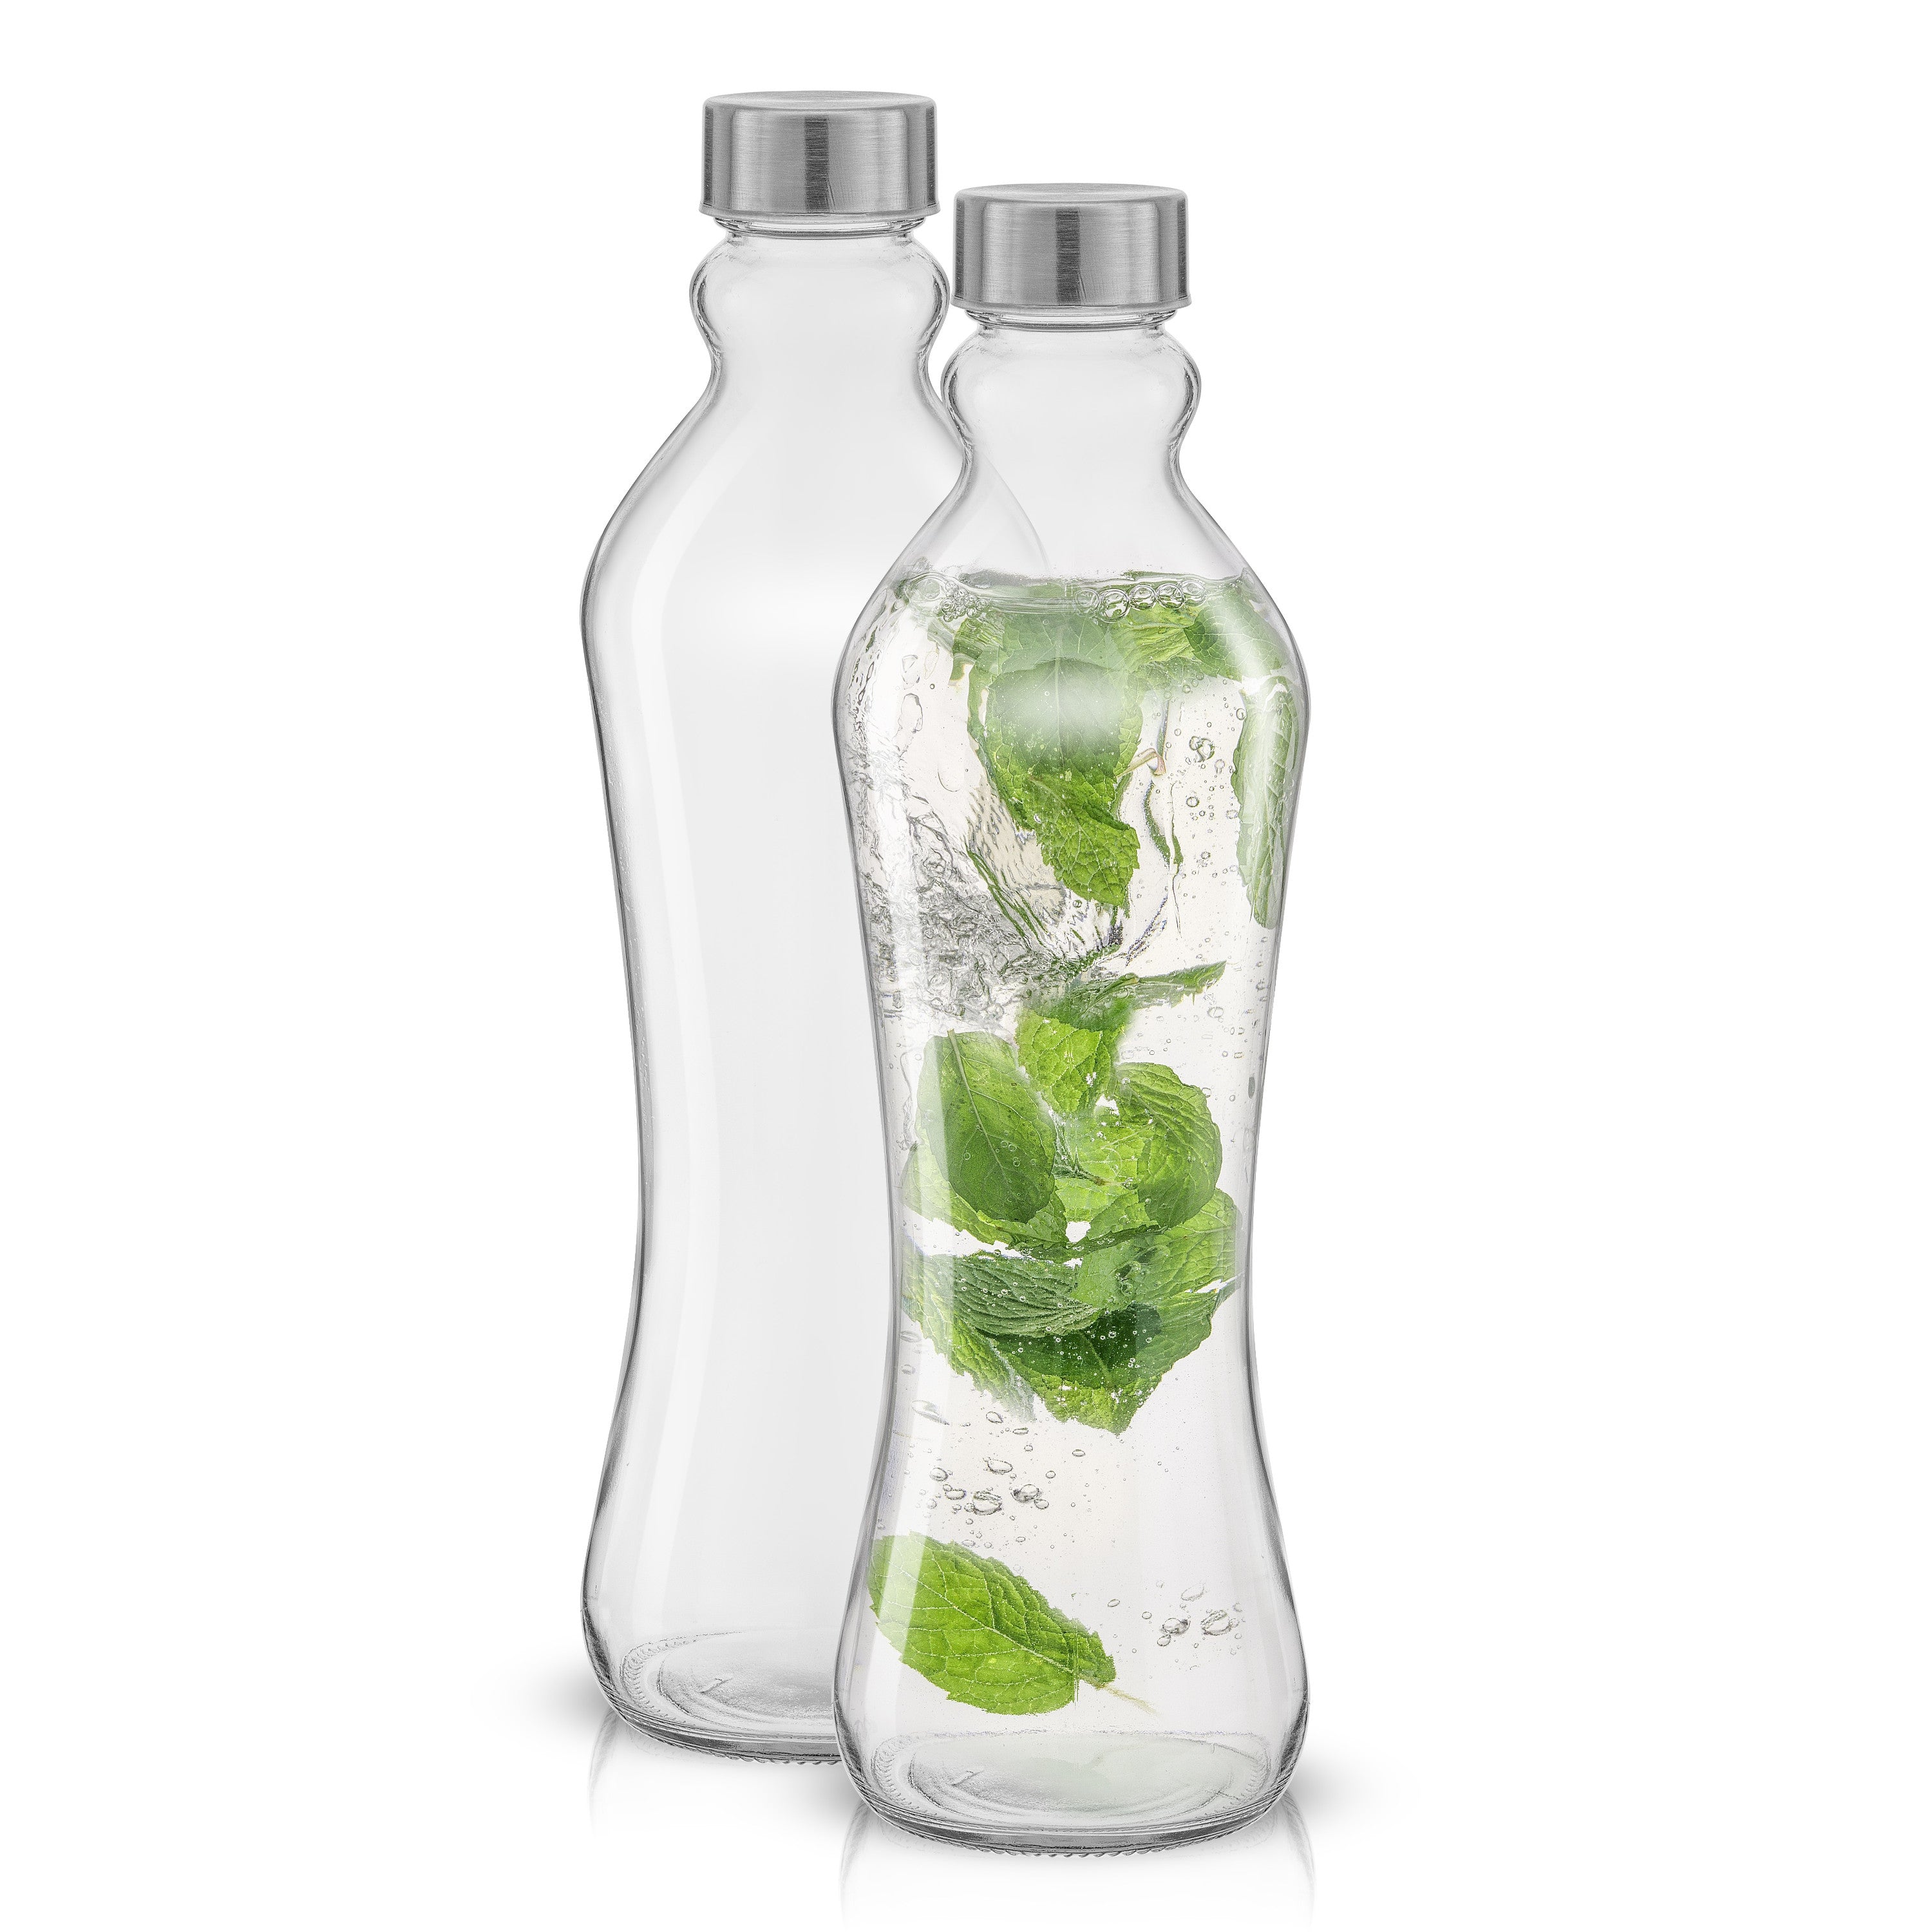 JoyJolt Reusable Glass Milk Bottle with Lid & Pourer - 64 oz - Set of 3, 64  oz - Kroger